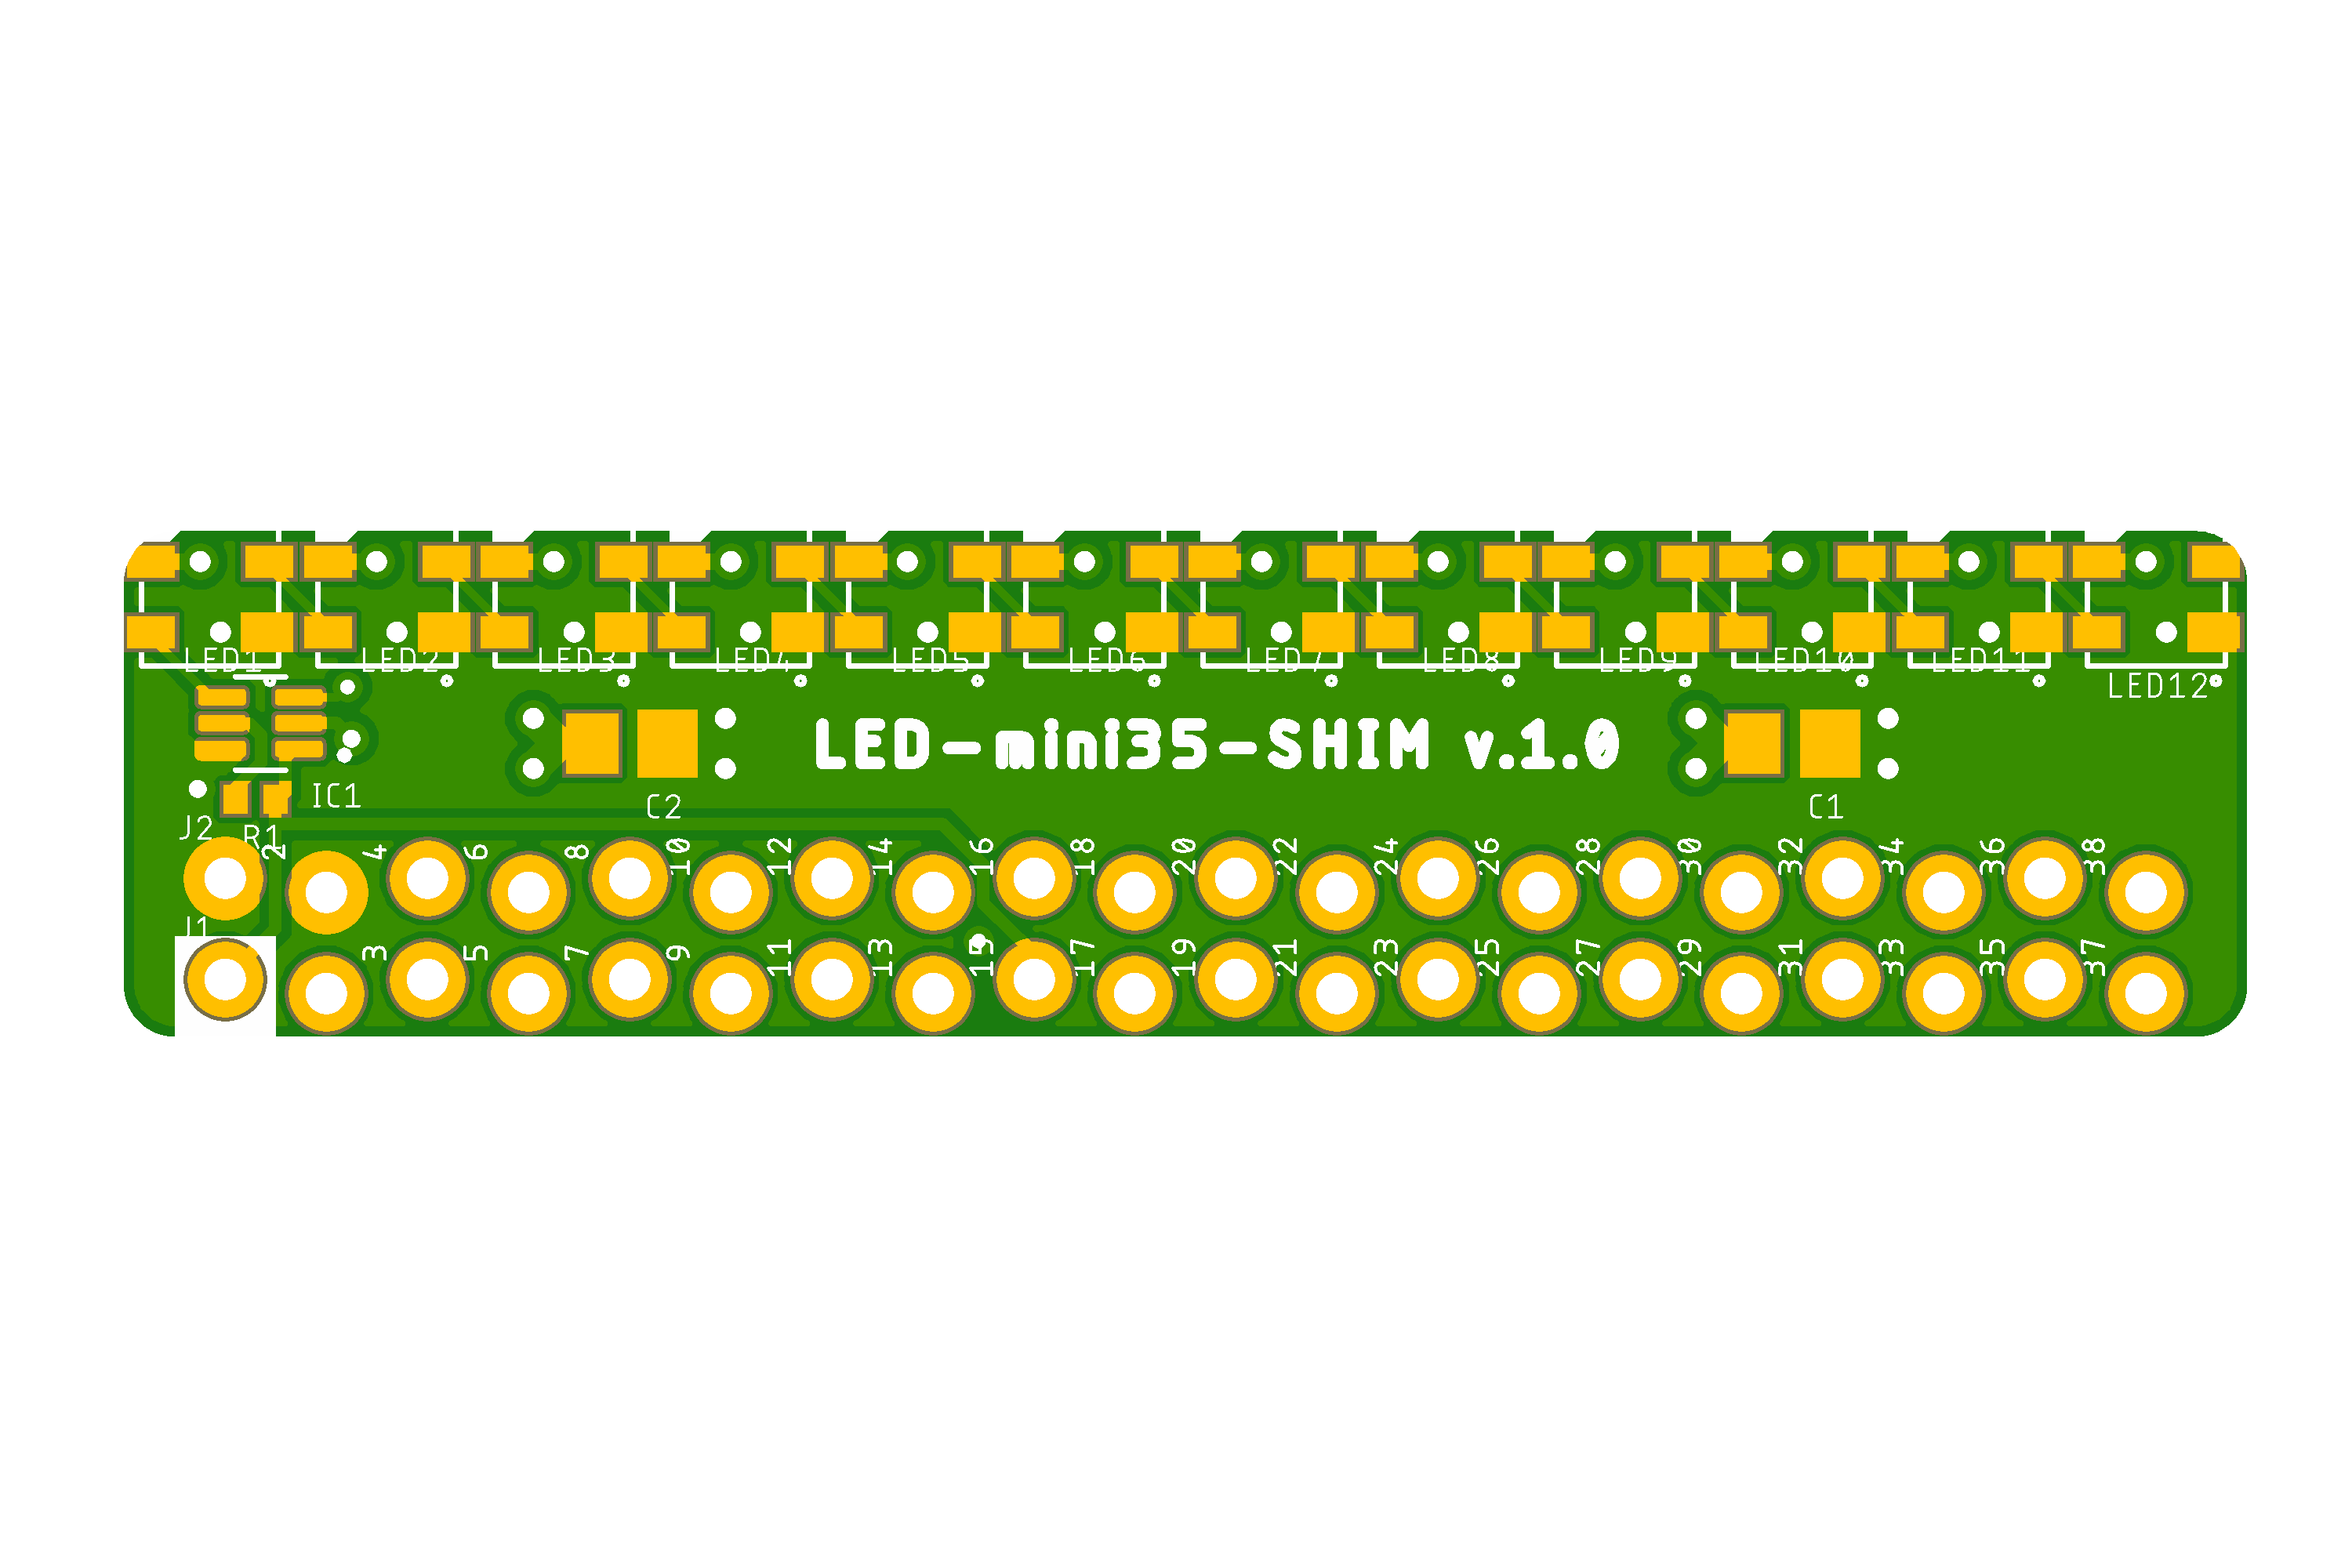 LED-mini35-SHIM preview